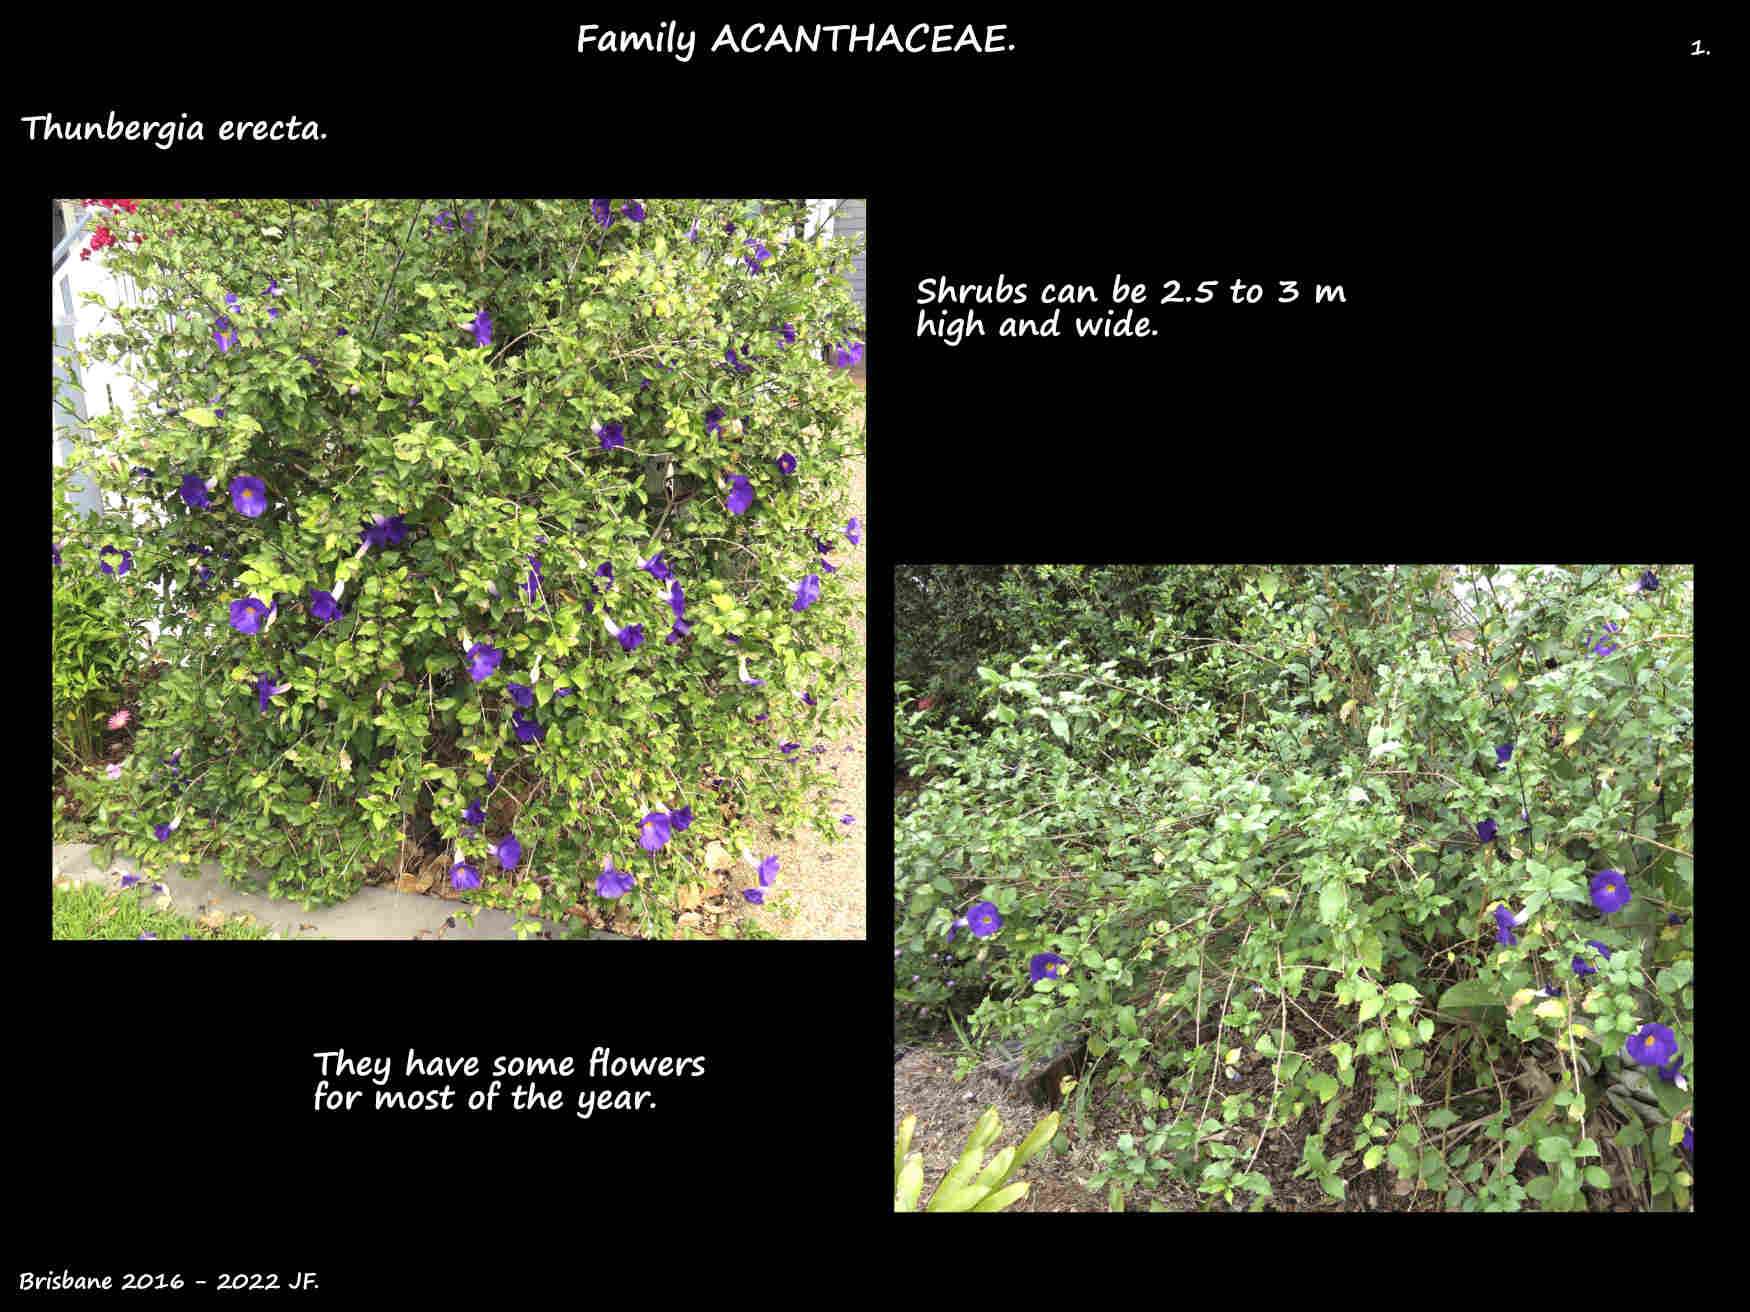 1 Thunbergia erecta shrubs